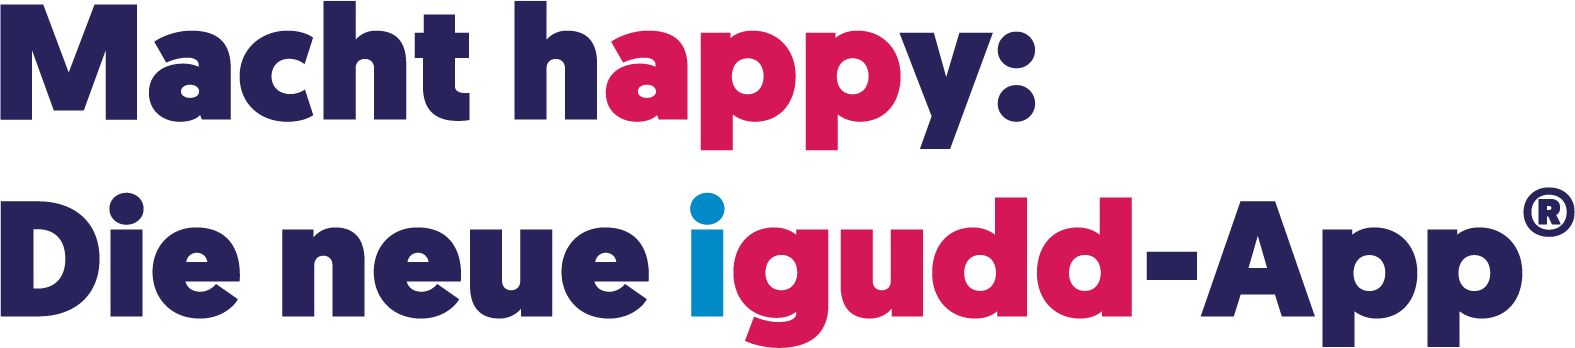 Macht happy: Die neue igudd-App